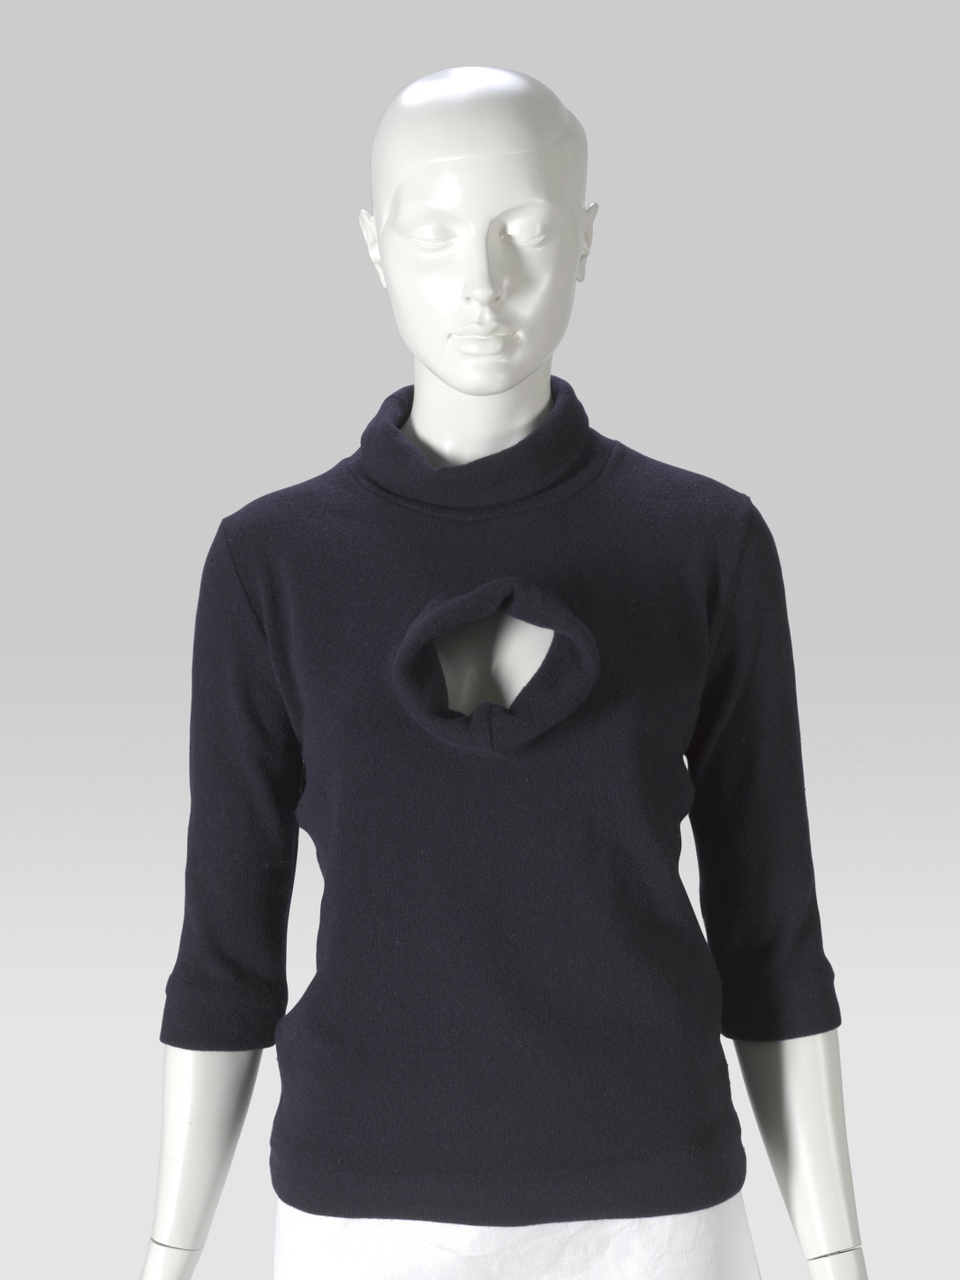 Triple turtleneck sweater uit de collectie' Show me your second face'